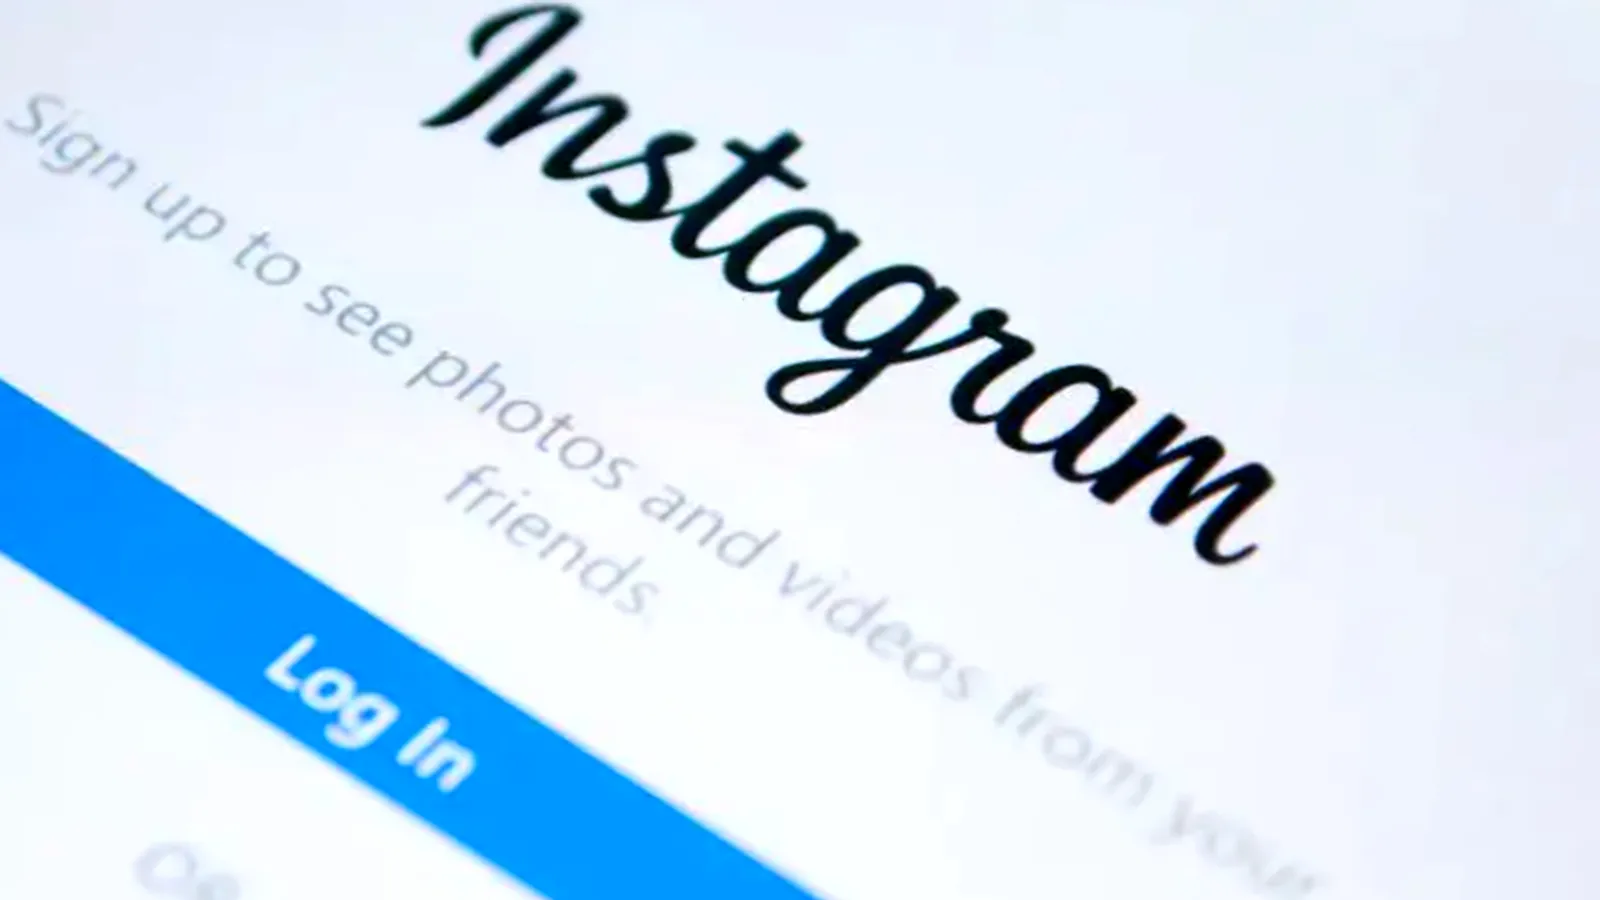 Hati-hati dengan Penipuan Pelanggaran Hak Cipta Instagram - picture owner: lifehacker - pibitek.biz - User